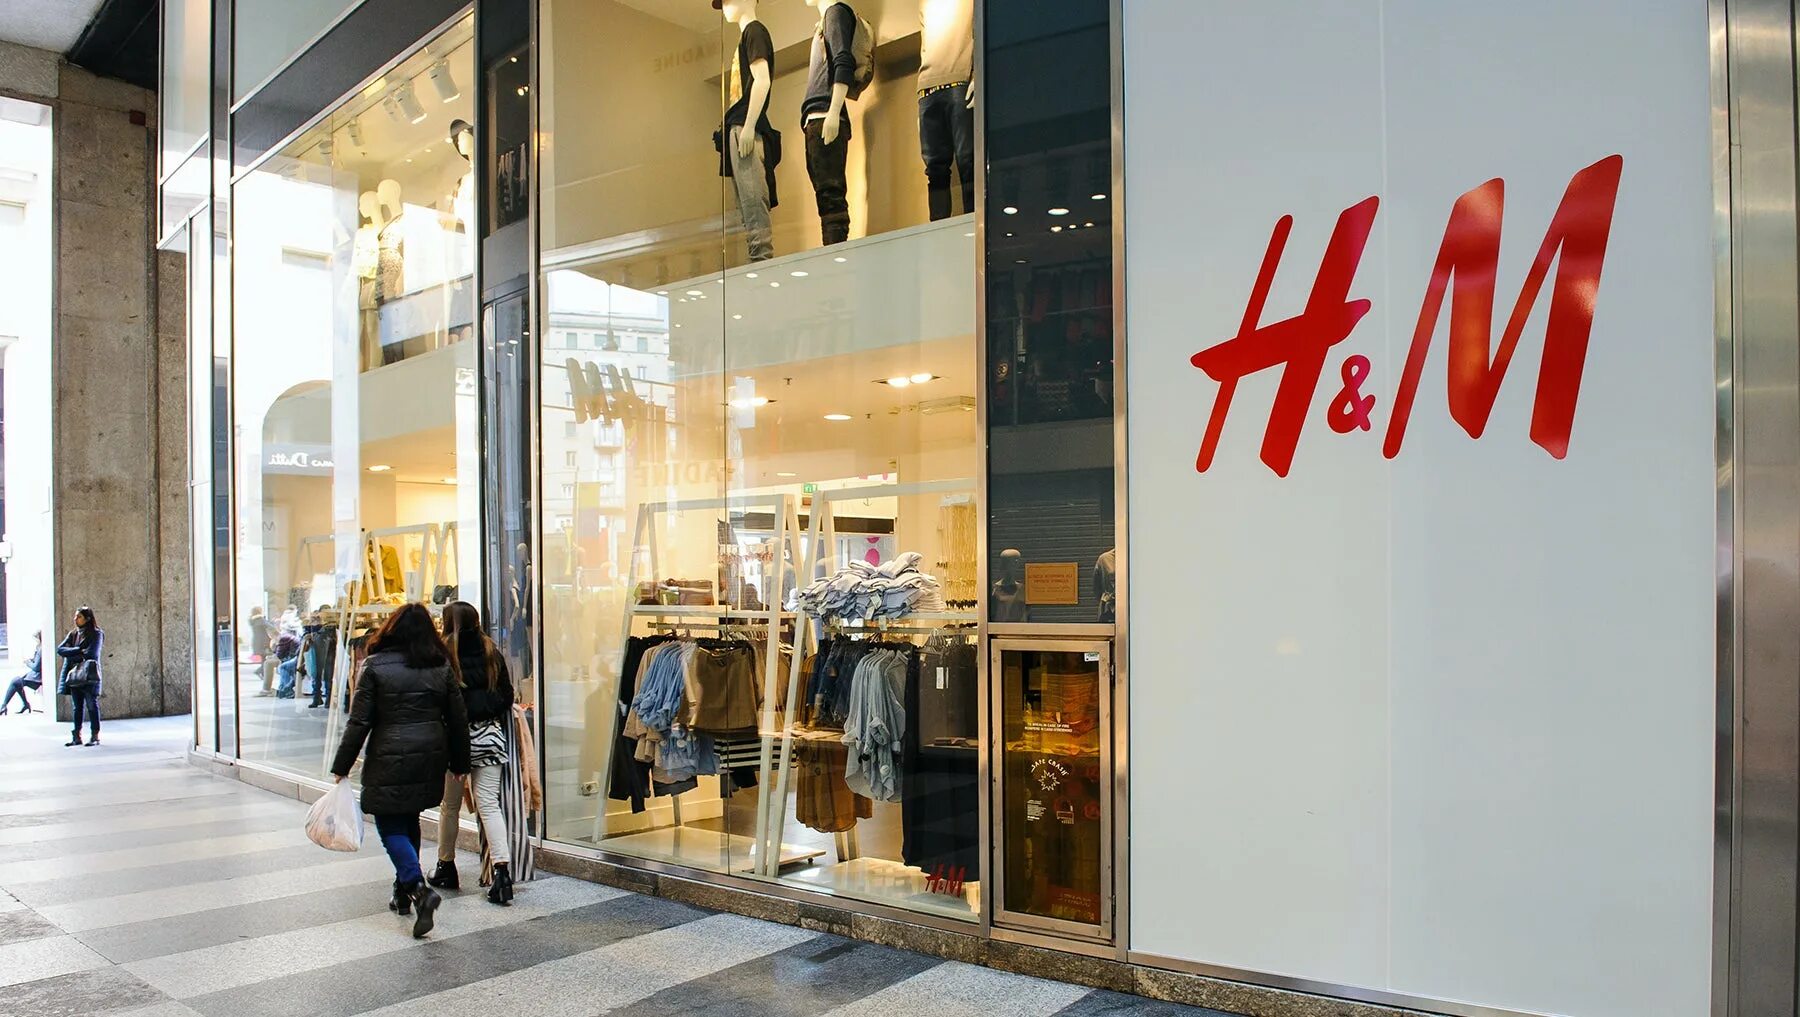 Https m com h. Бренд h m. Торговая сеть h&m. HM одежда. Магазин эйч энд эм.